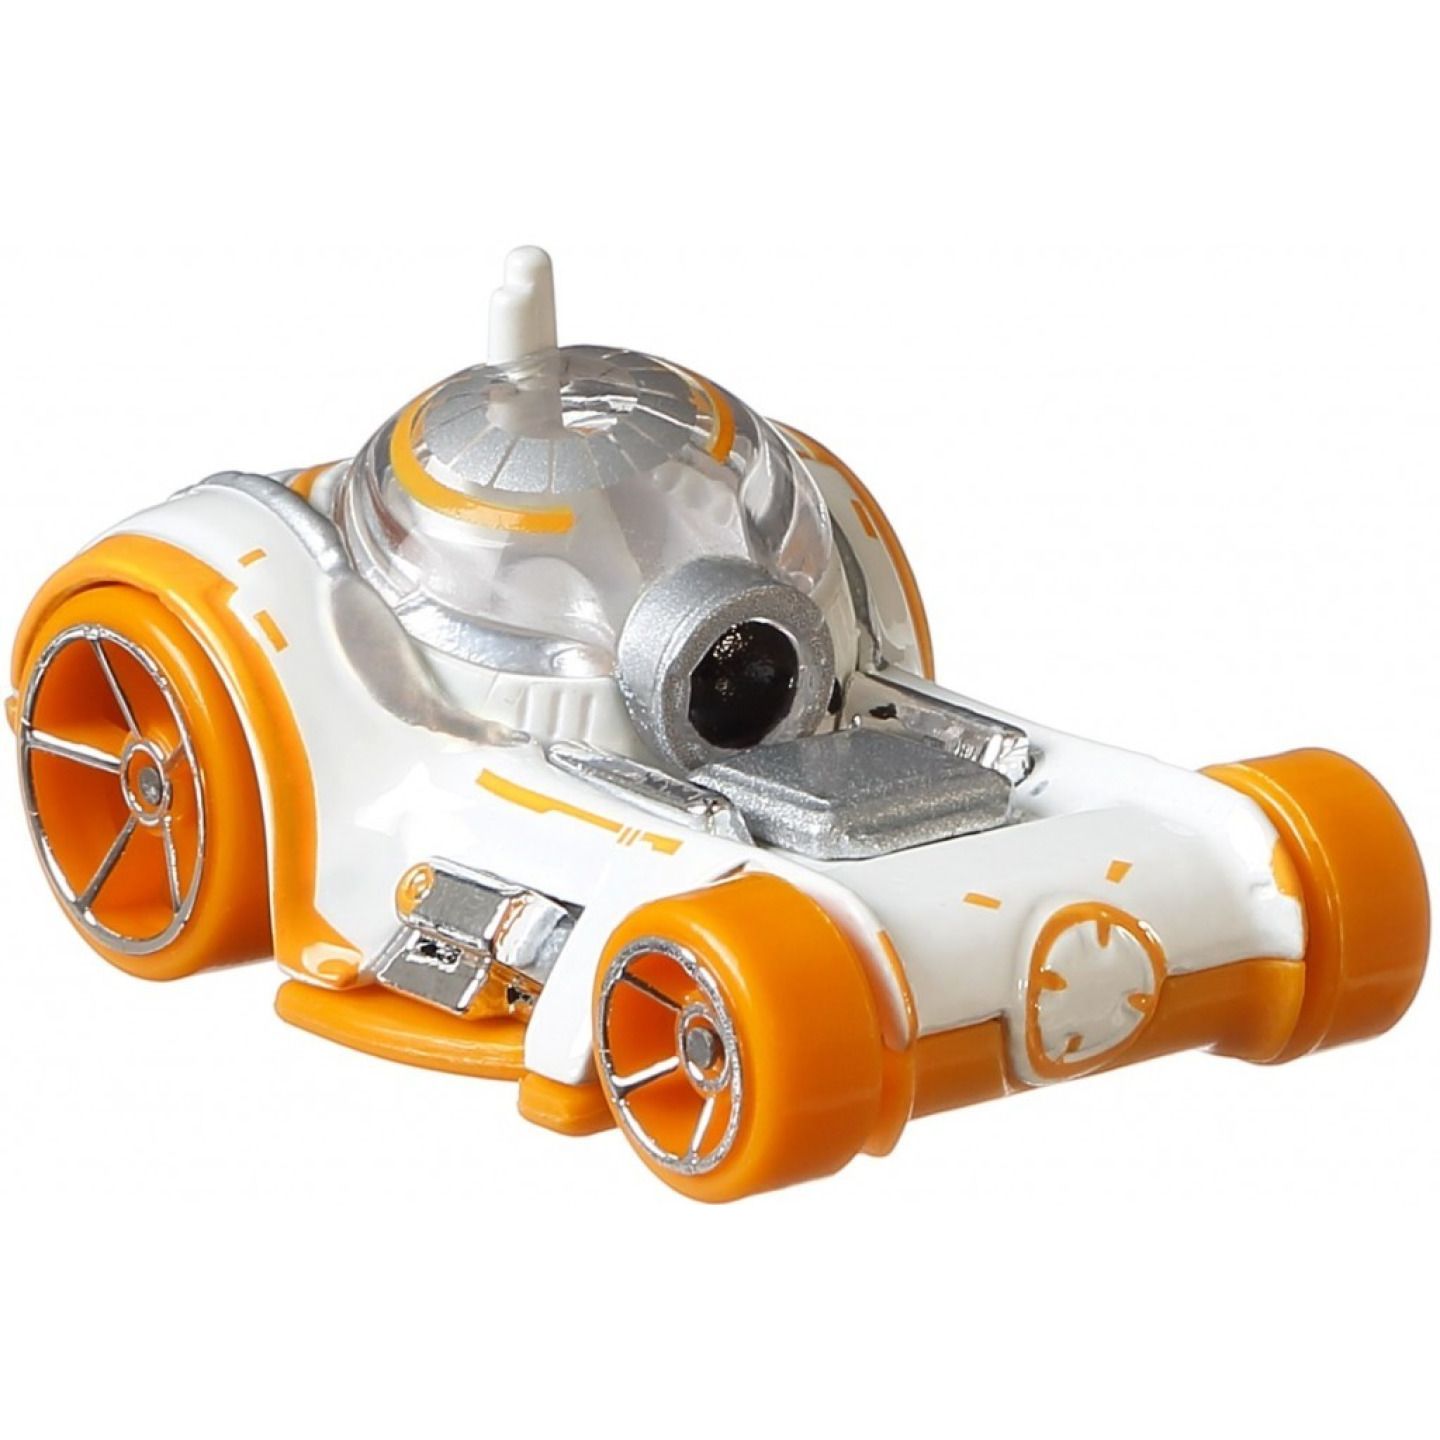 Hot Wheels Star Wars BB-8, Mattel GMH90